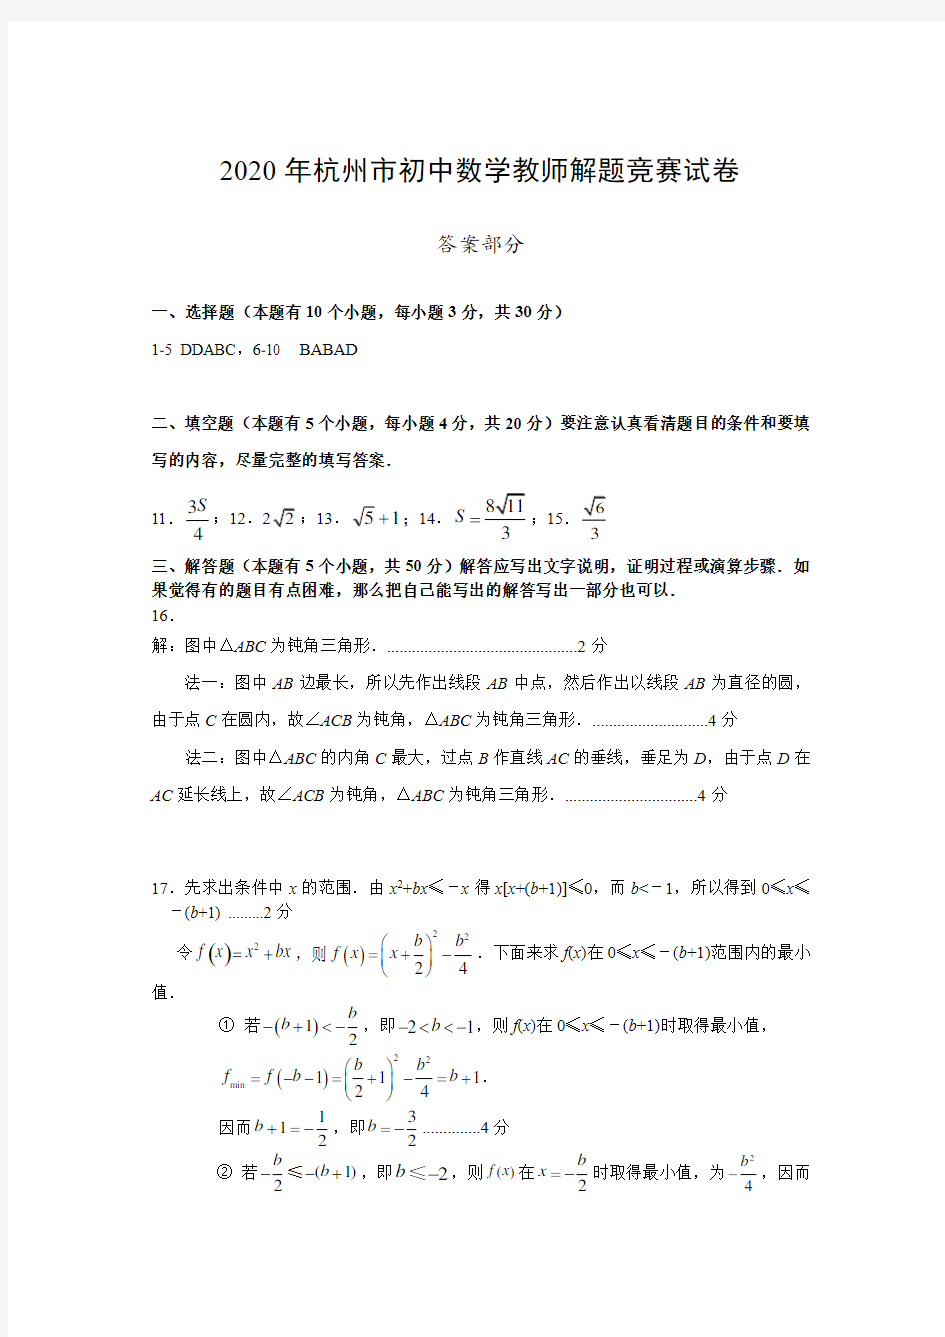 2020年杭州市初中数学教师解题竞赛试卷 - 答案